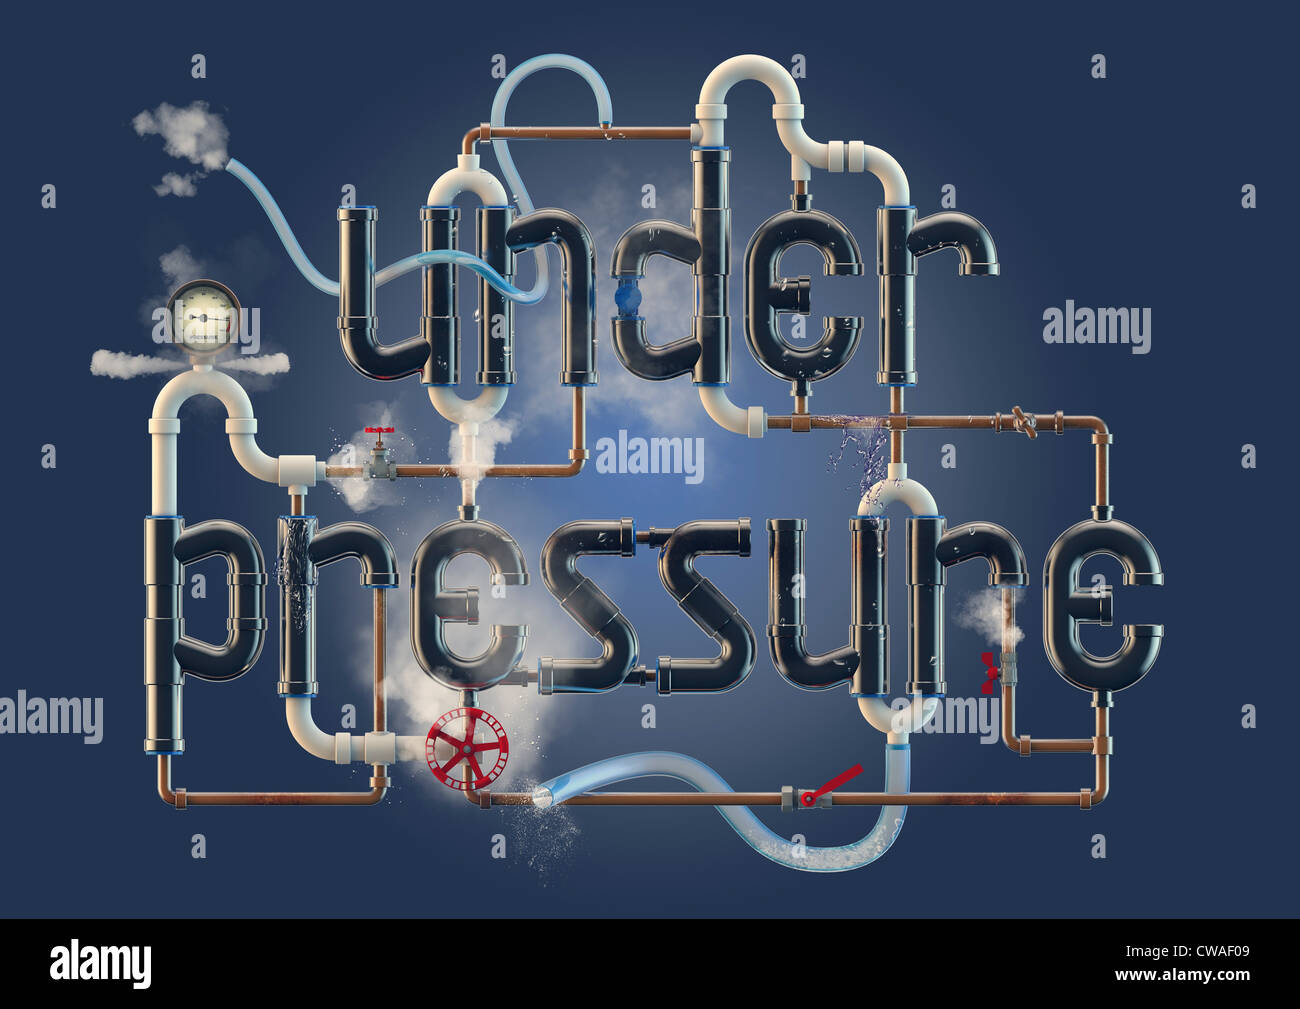 Sotto pressione - illustrazione di parola formata da tubazioni Foto Stock